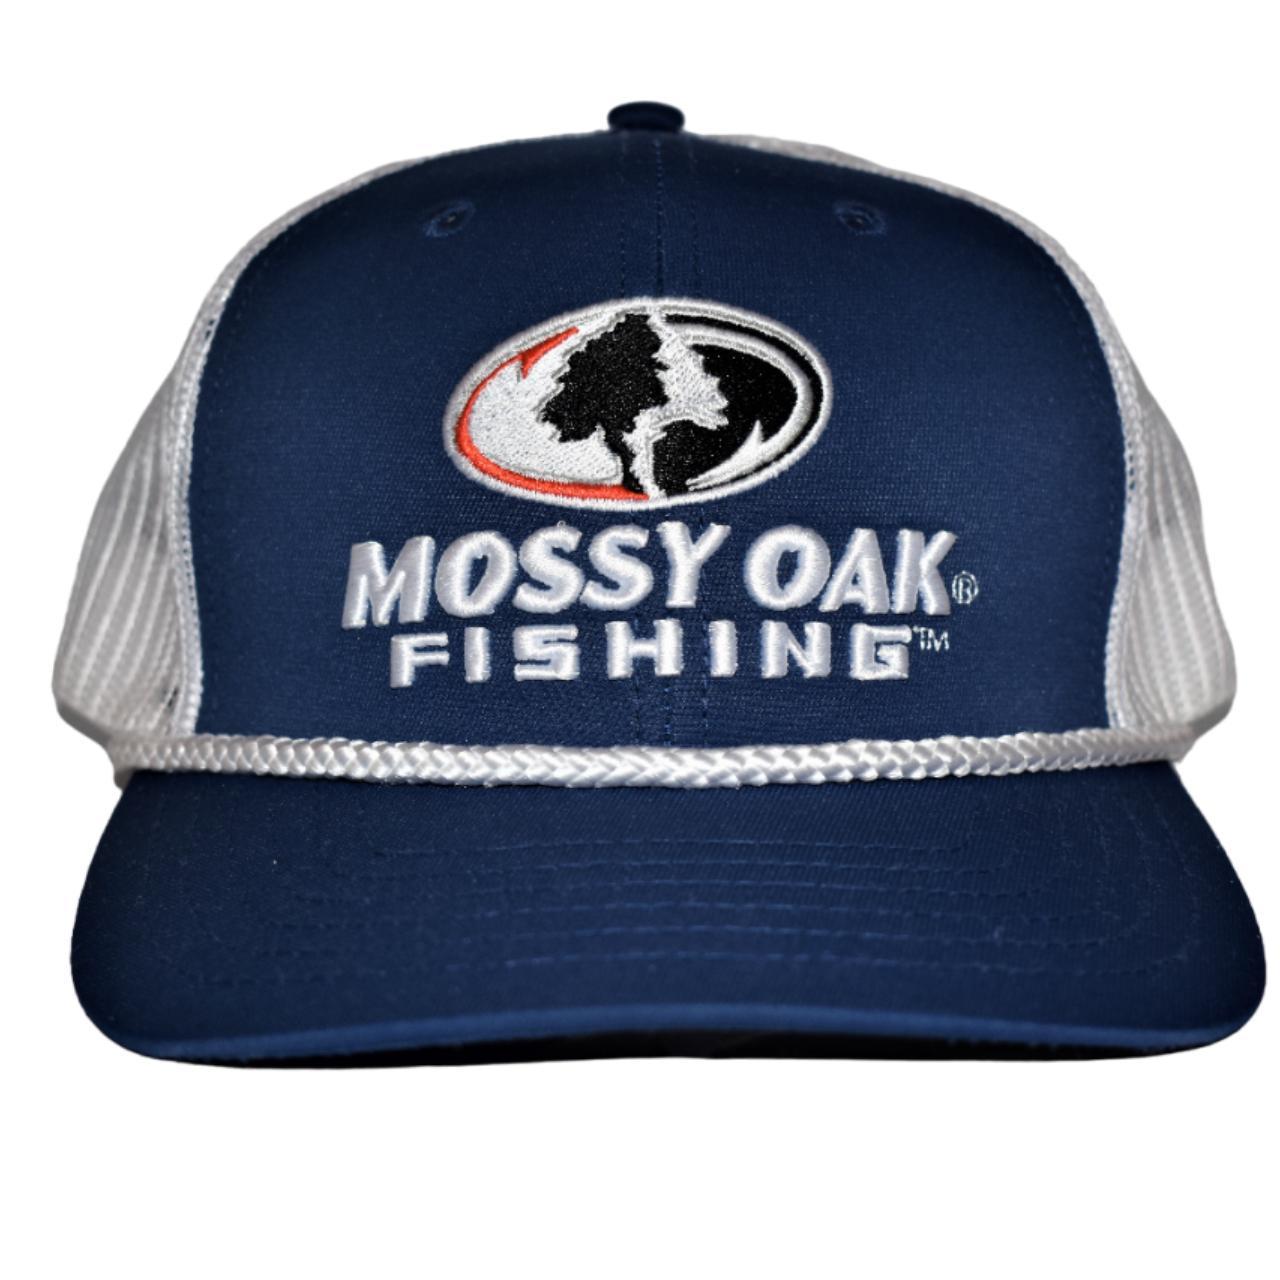 Mossy Oak Fishing Trucker Hat This hat is in - Depop